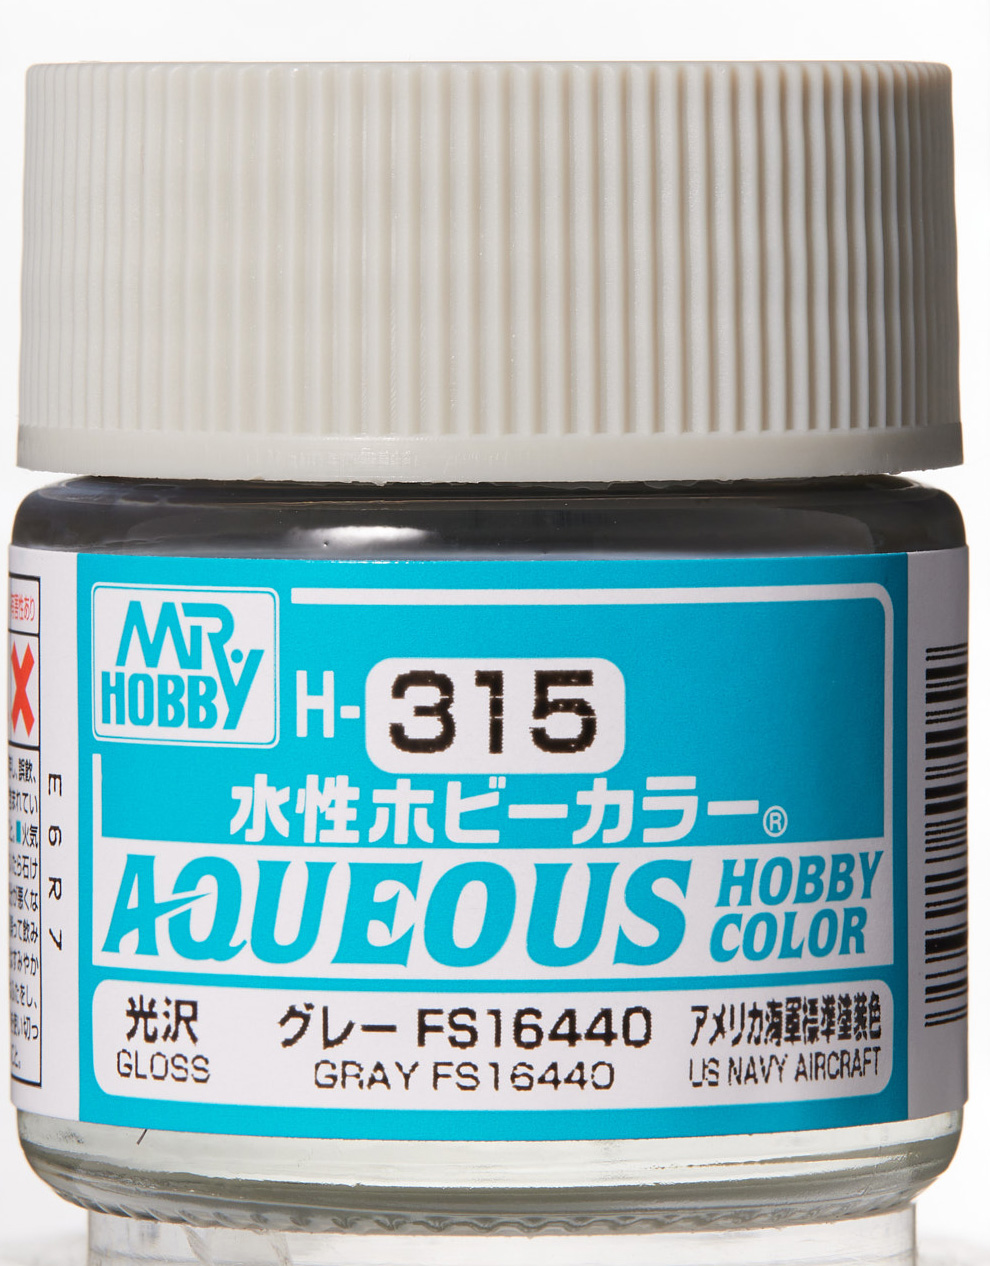 Mr. Aqueous Hobby Color - Gray FS16440 - H315 - Grau FS16440 